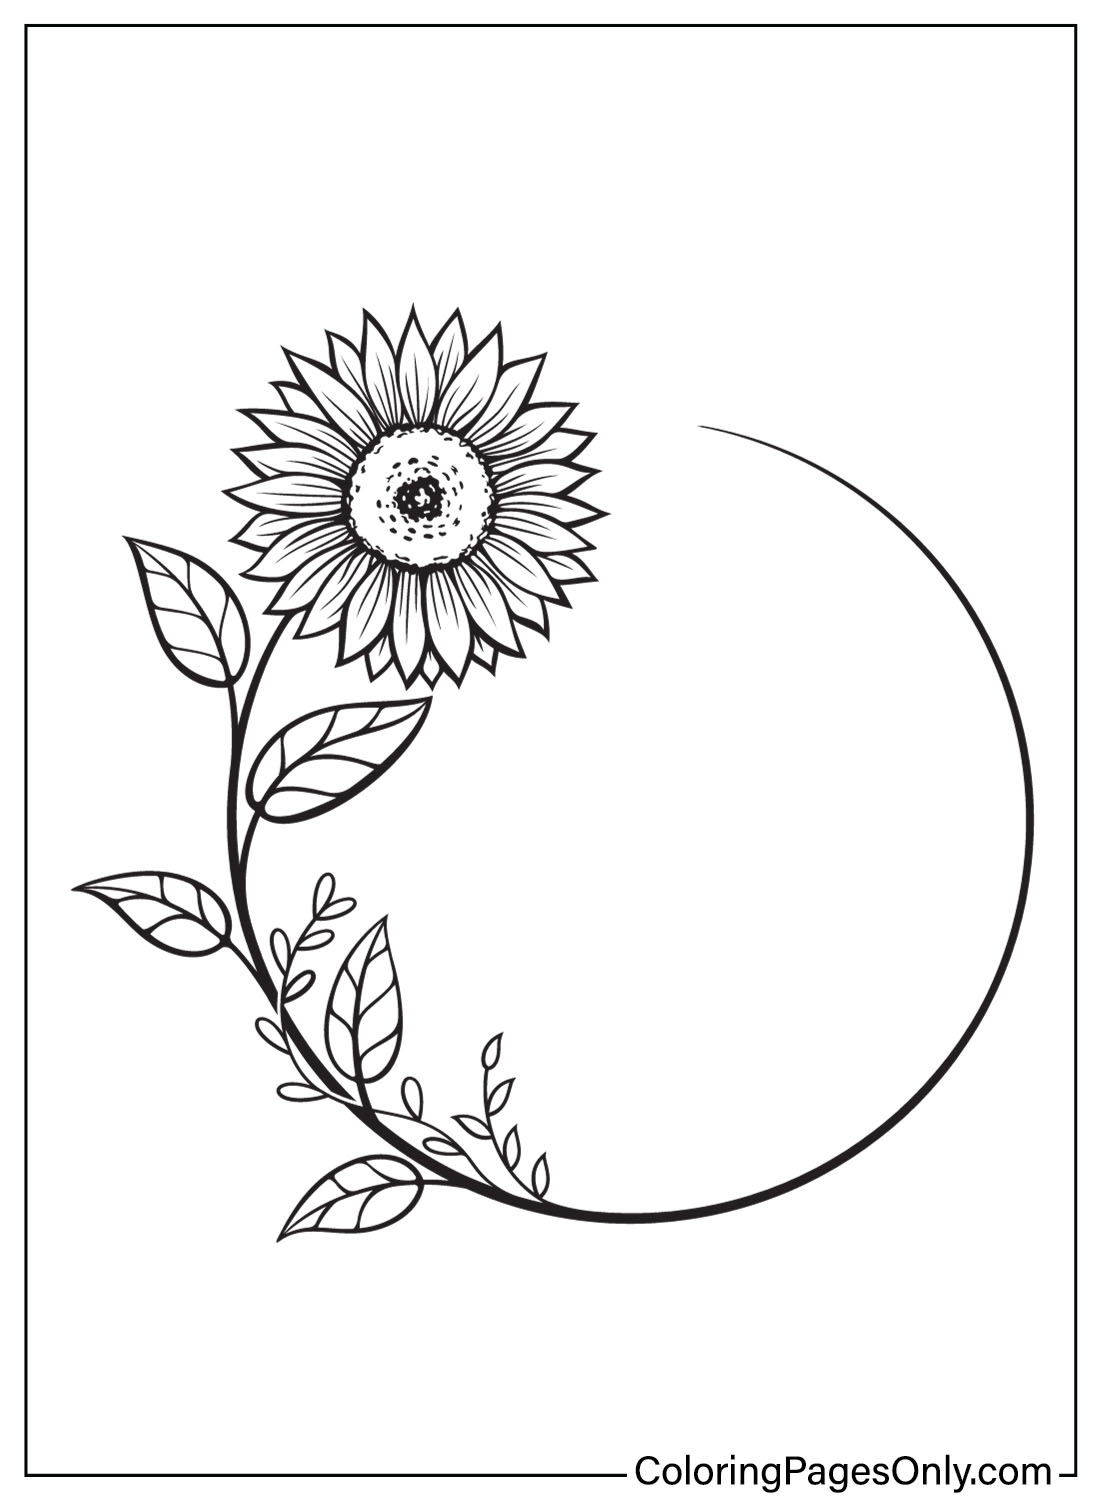 Malvorlage Sonnenblume zum Ausdrucken von Sunflower